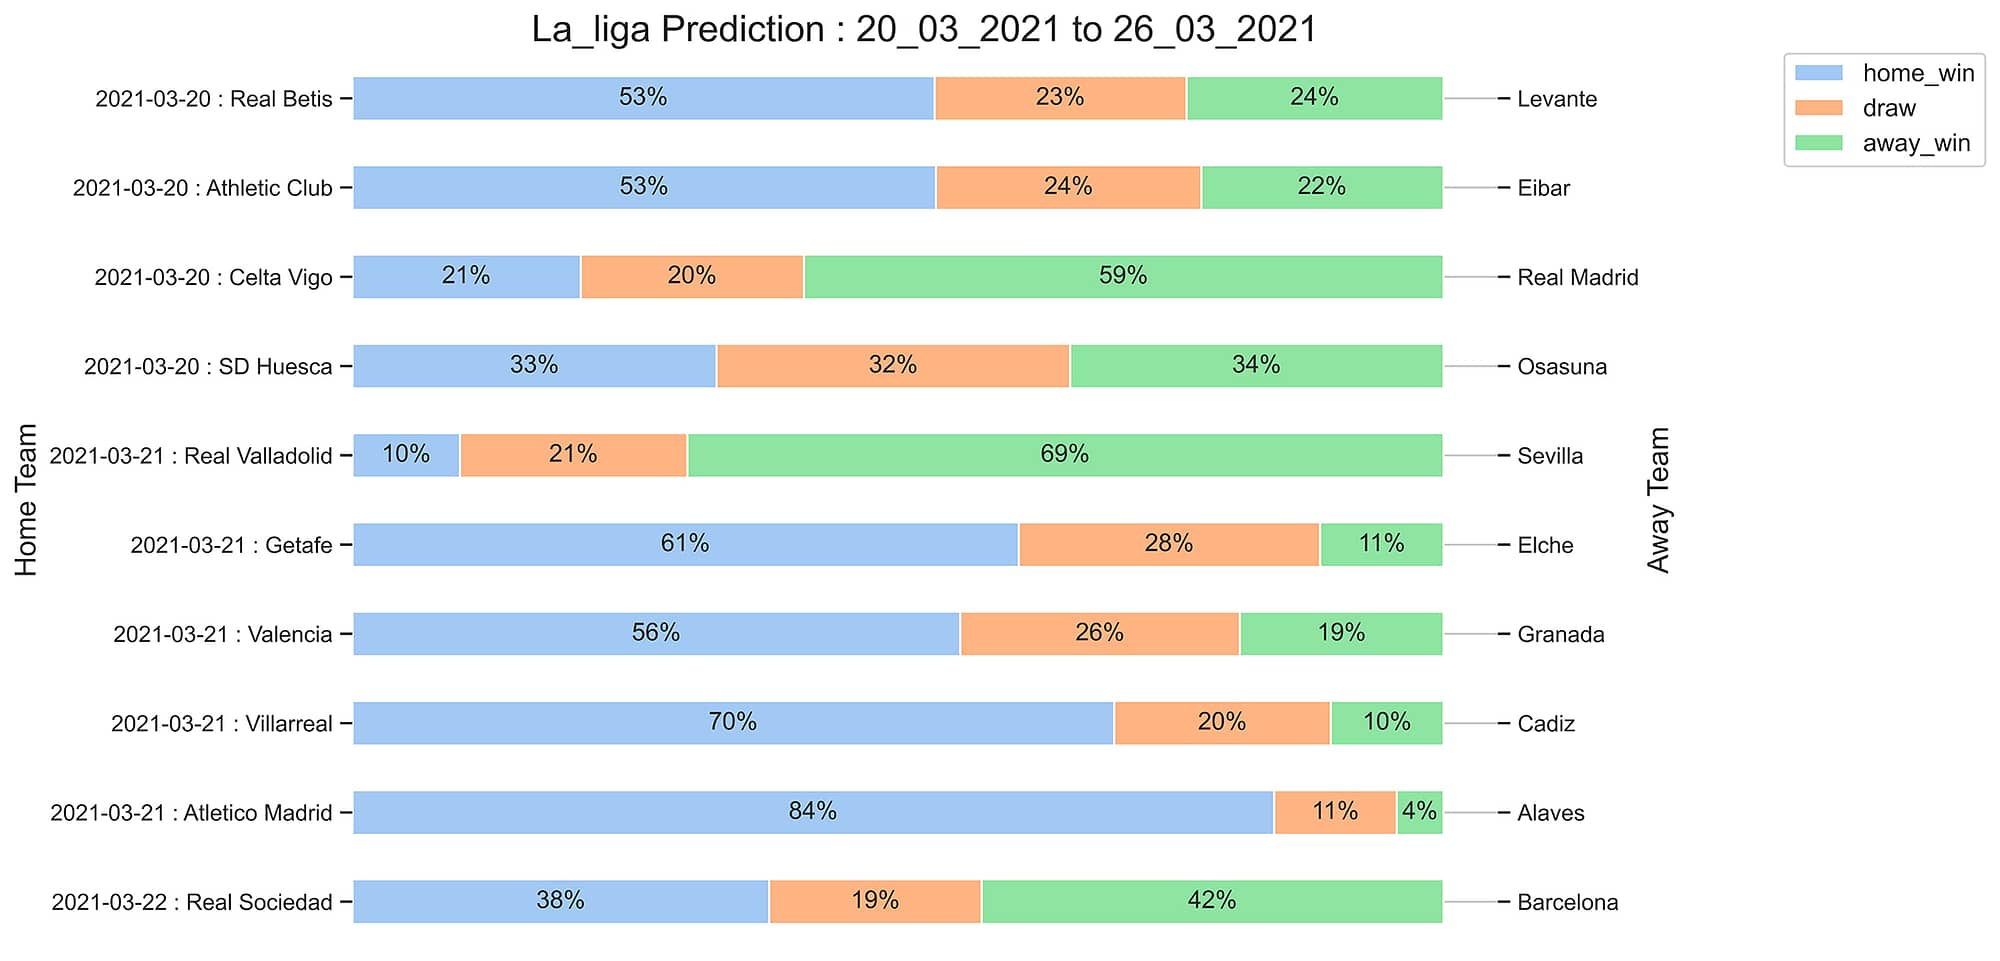 La_liga_Prediction 20_03_2021